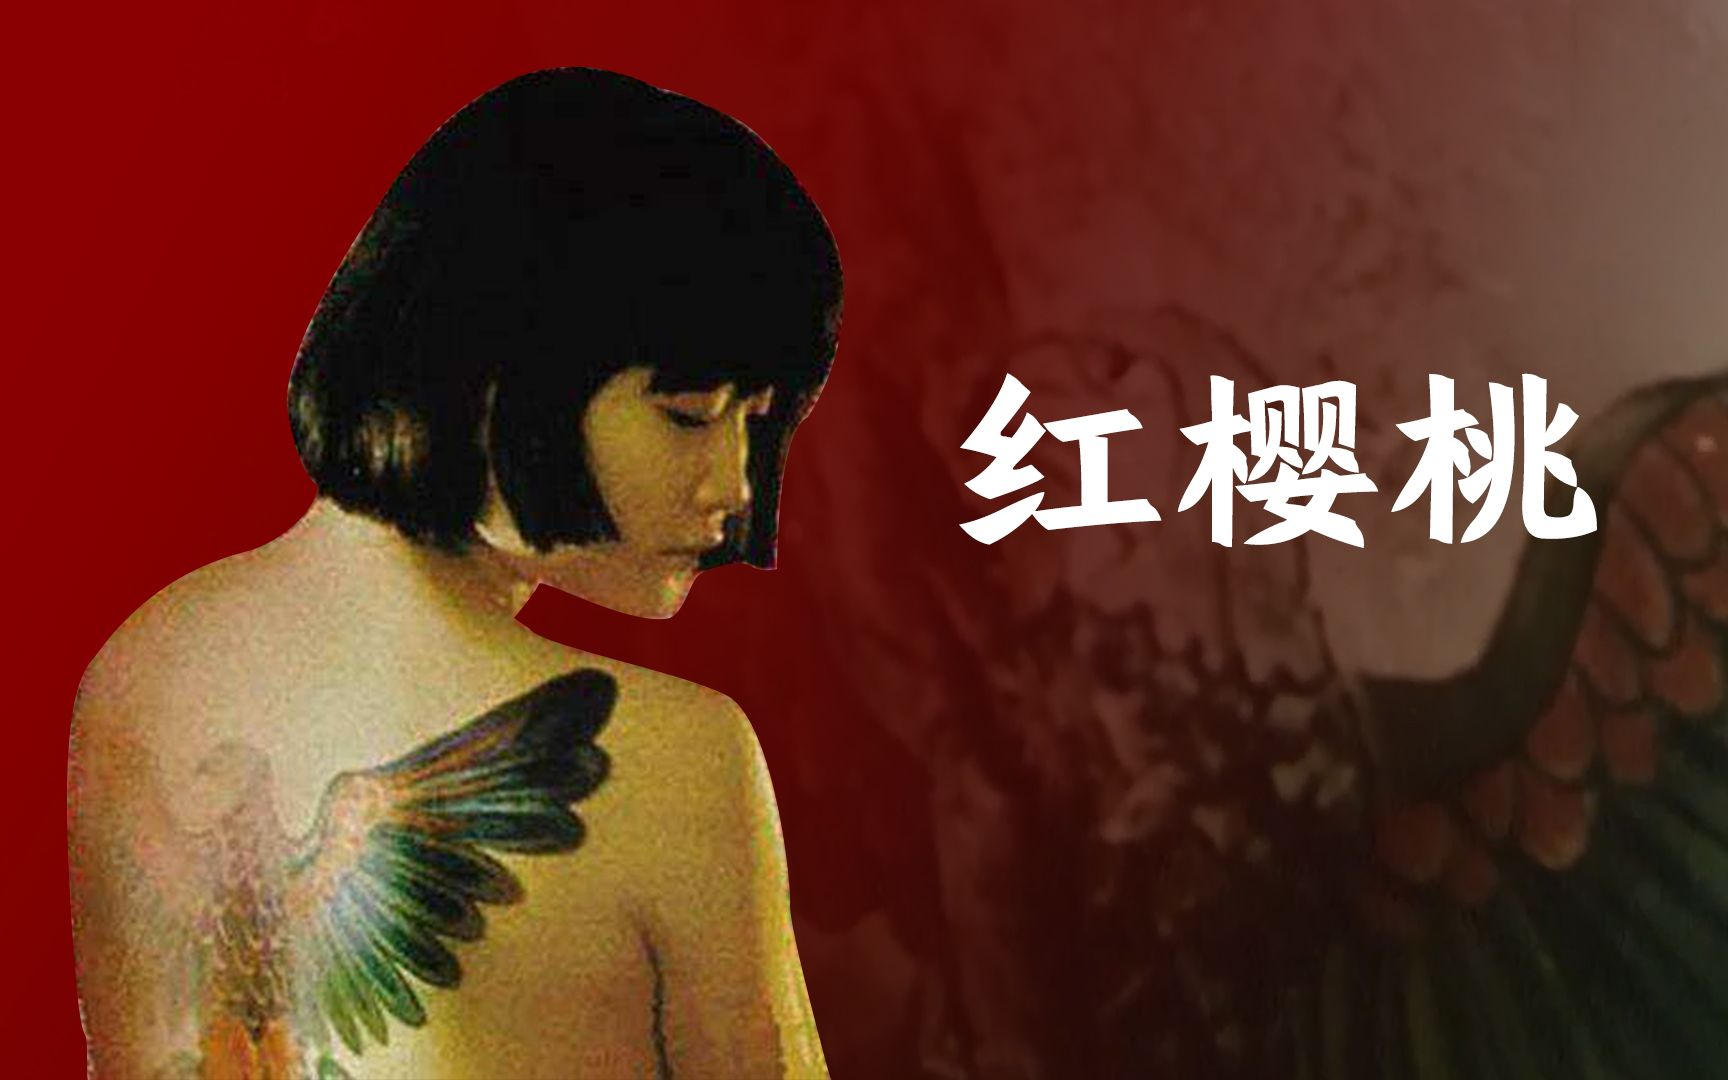 【红樱桃】国产良心电影  二战苏德战场的中国女孩,一个牵动人心的